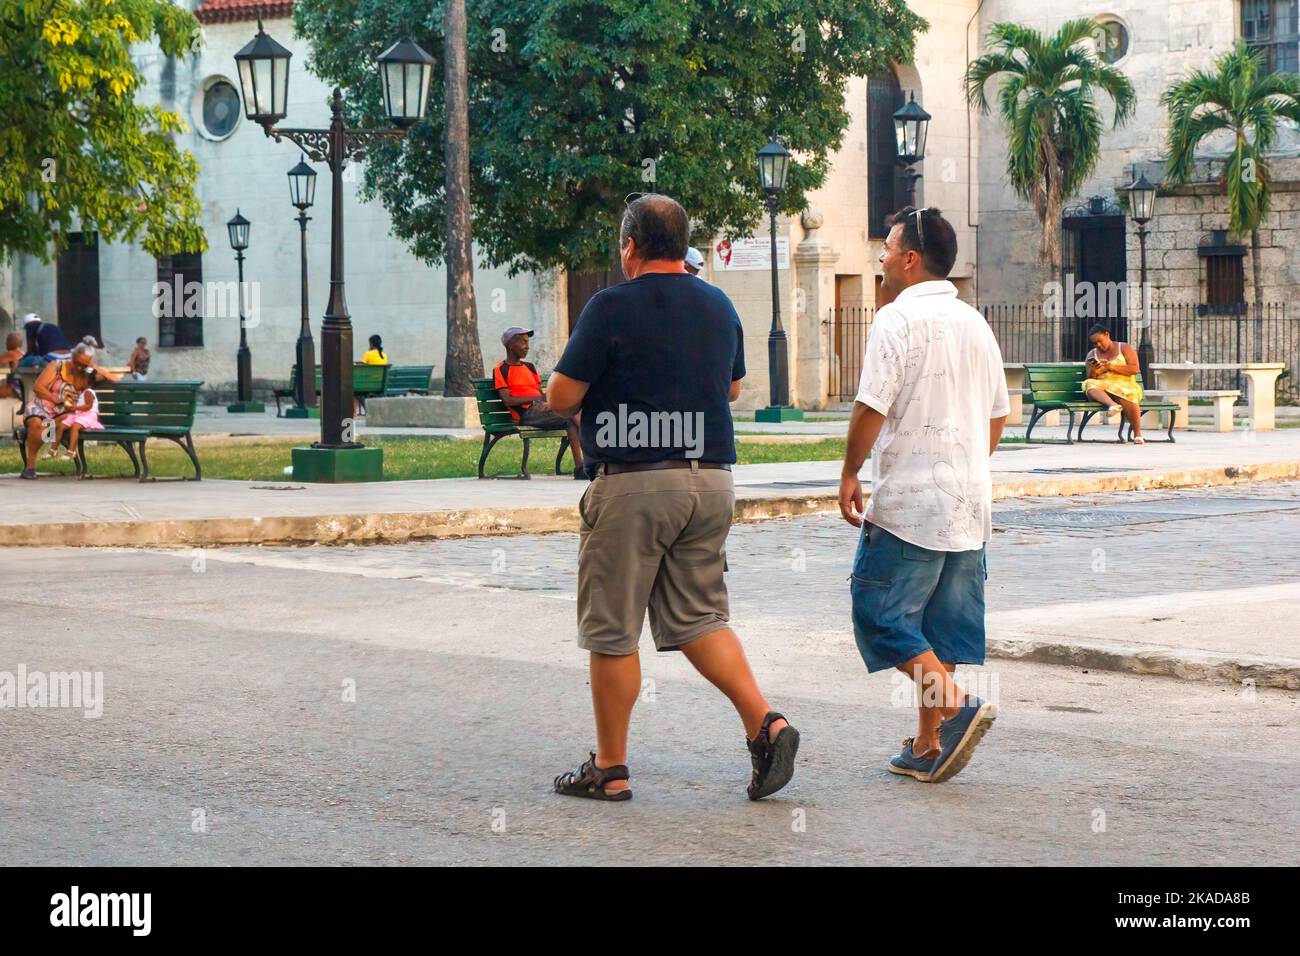 Dos hombres caminando en medio de una calle de la ciudad. Estilo de vida de la gente real por una pequeña parquette en la esquina Foto de stock